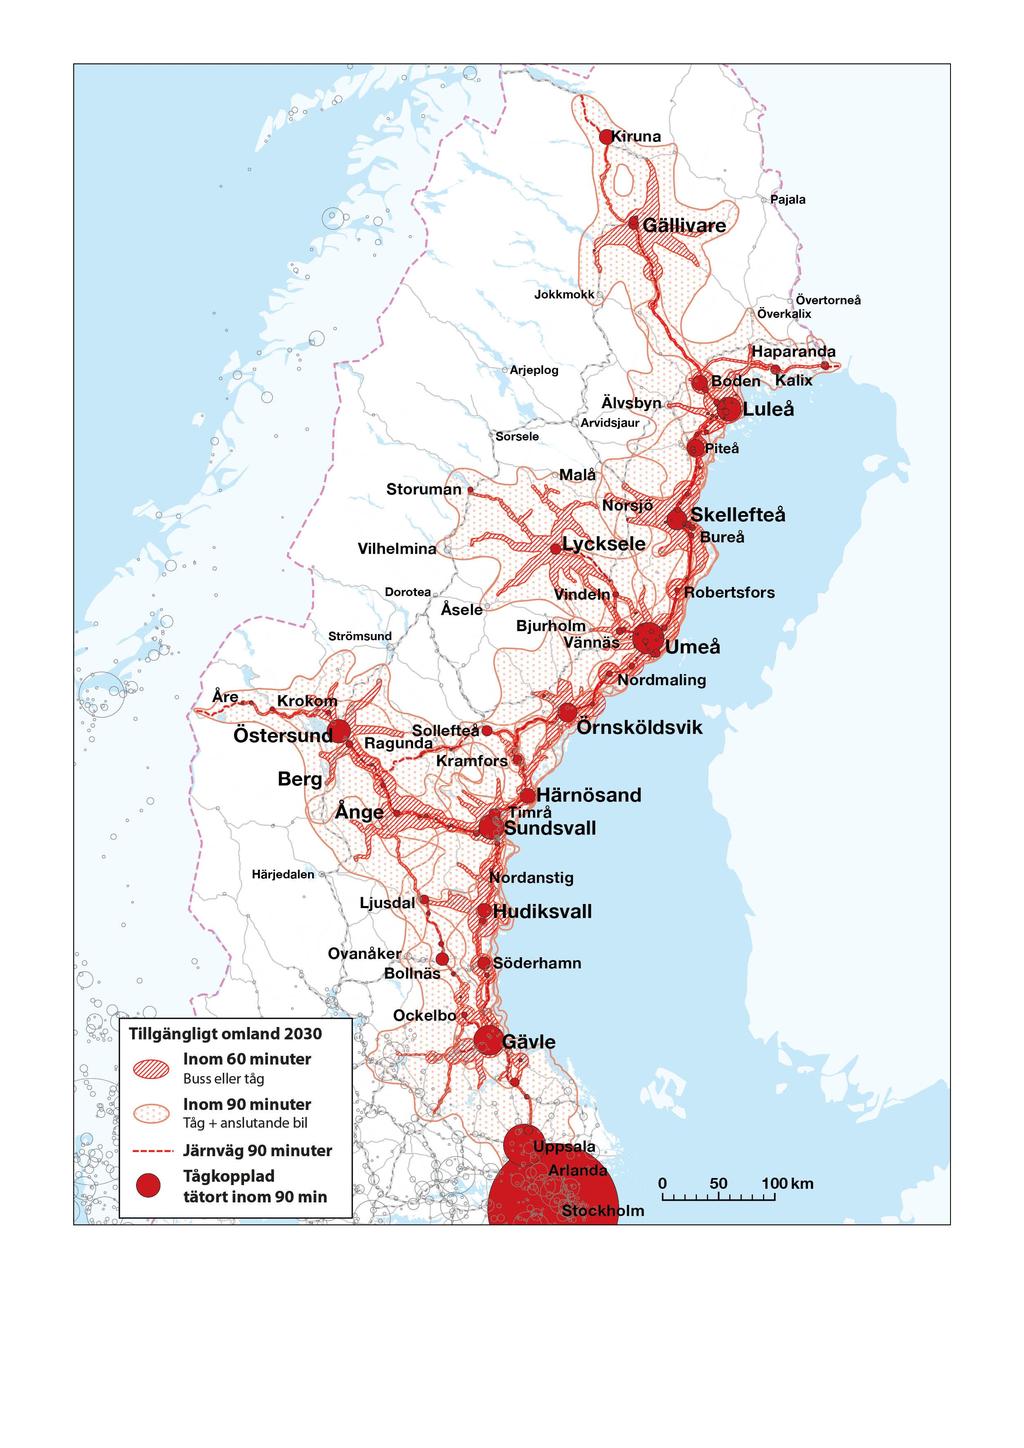 4.3 Inbördes överlappande regioner skapas och ger starkt ökat samspel och dynamik Figur 4.3:1 visar att merparten av norra Sverige kan inkluderas i ökat samspel.